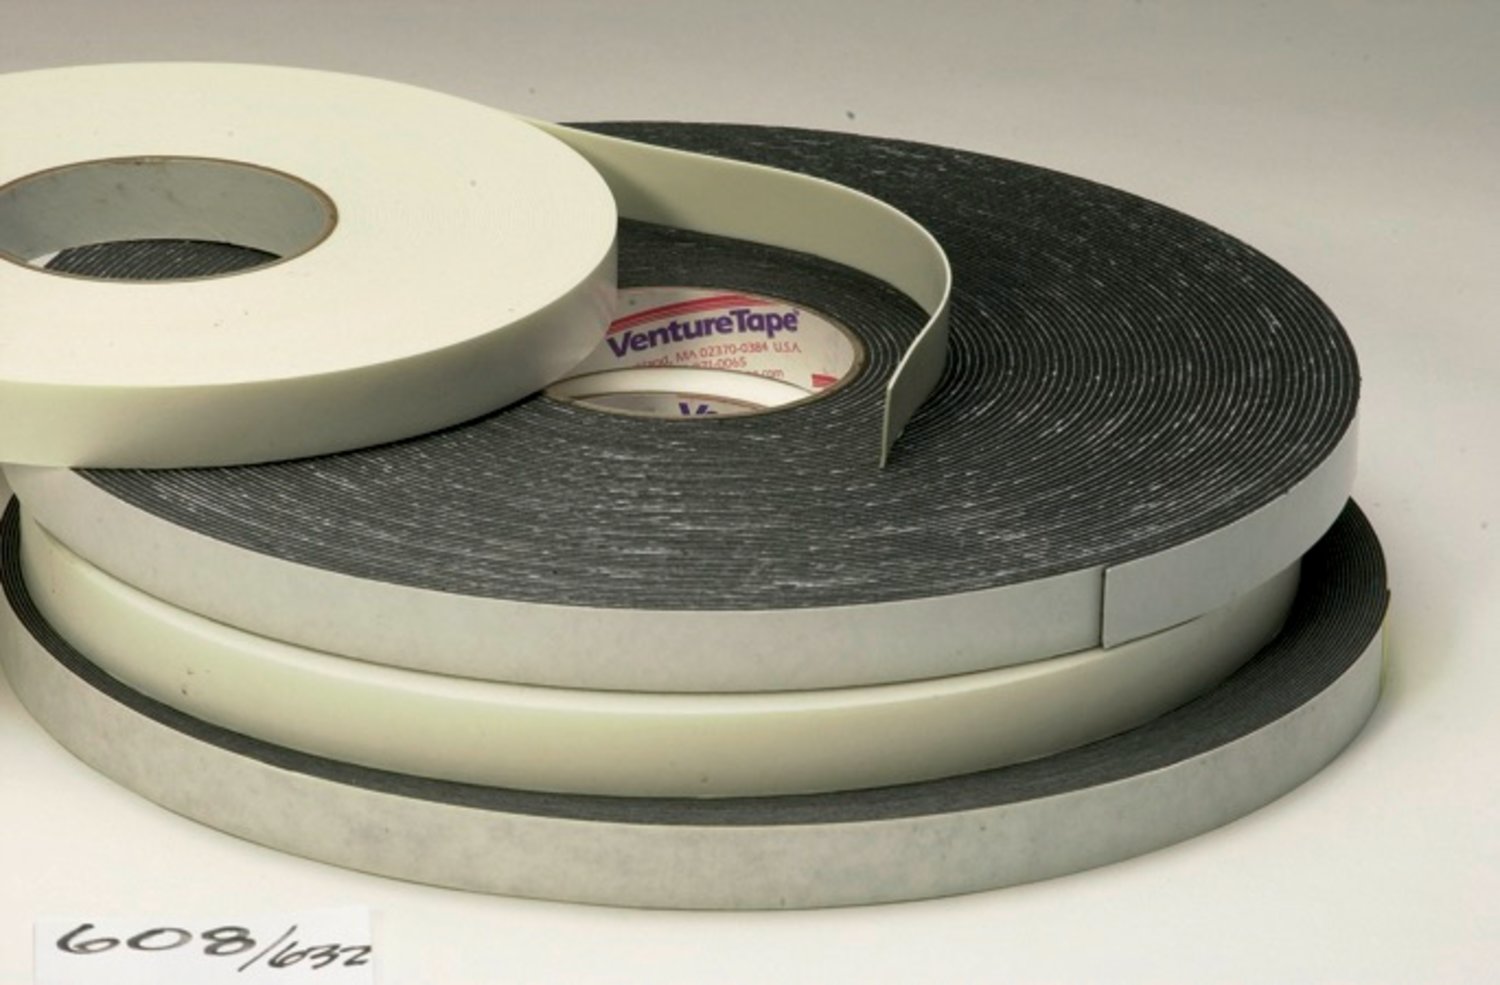 7010291460 - 3M Venture Tape Double Sided Polyethylene Foam Glazing Tape VG1208,
Black, 1/4 in x 85 ft, 125 mil, 78 rolls per case